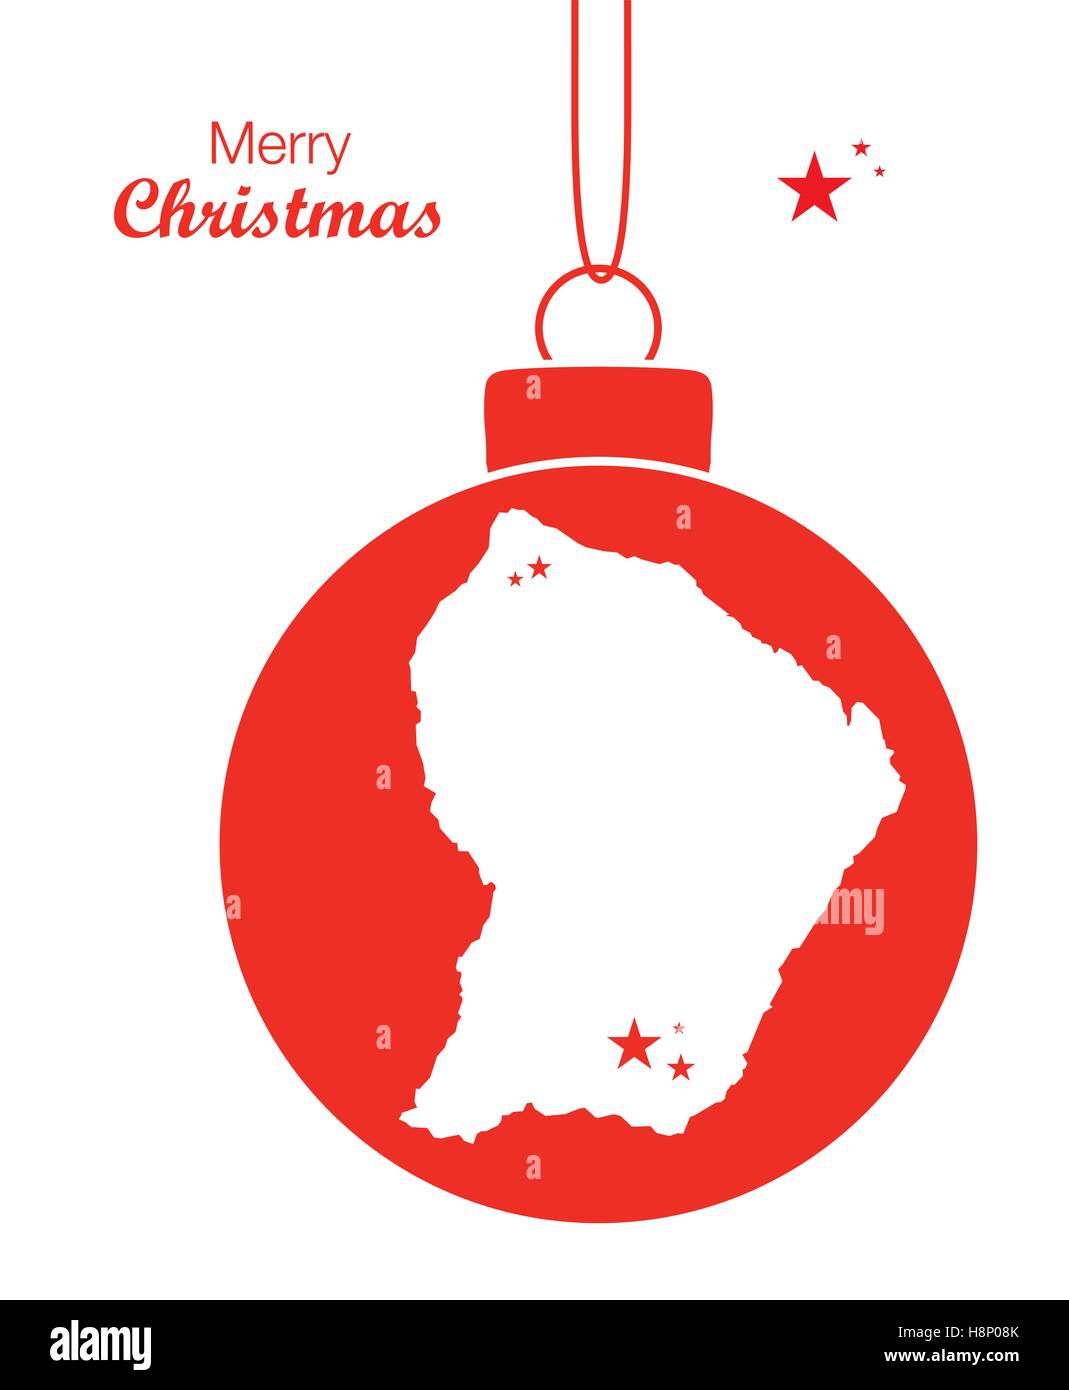 Joyeux Noël thème d'illustration avec la carte de la Guyane française Illustration de Vecteur